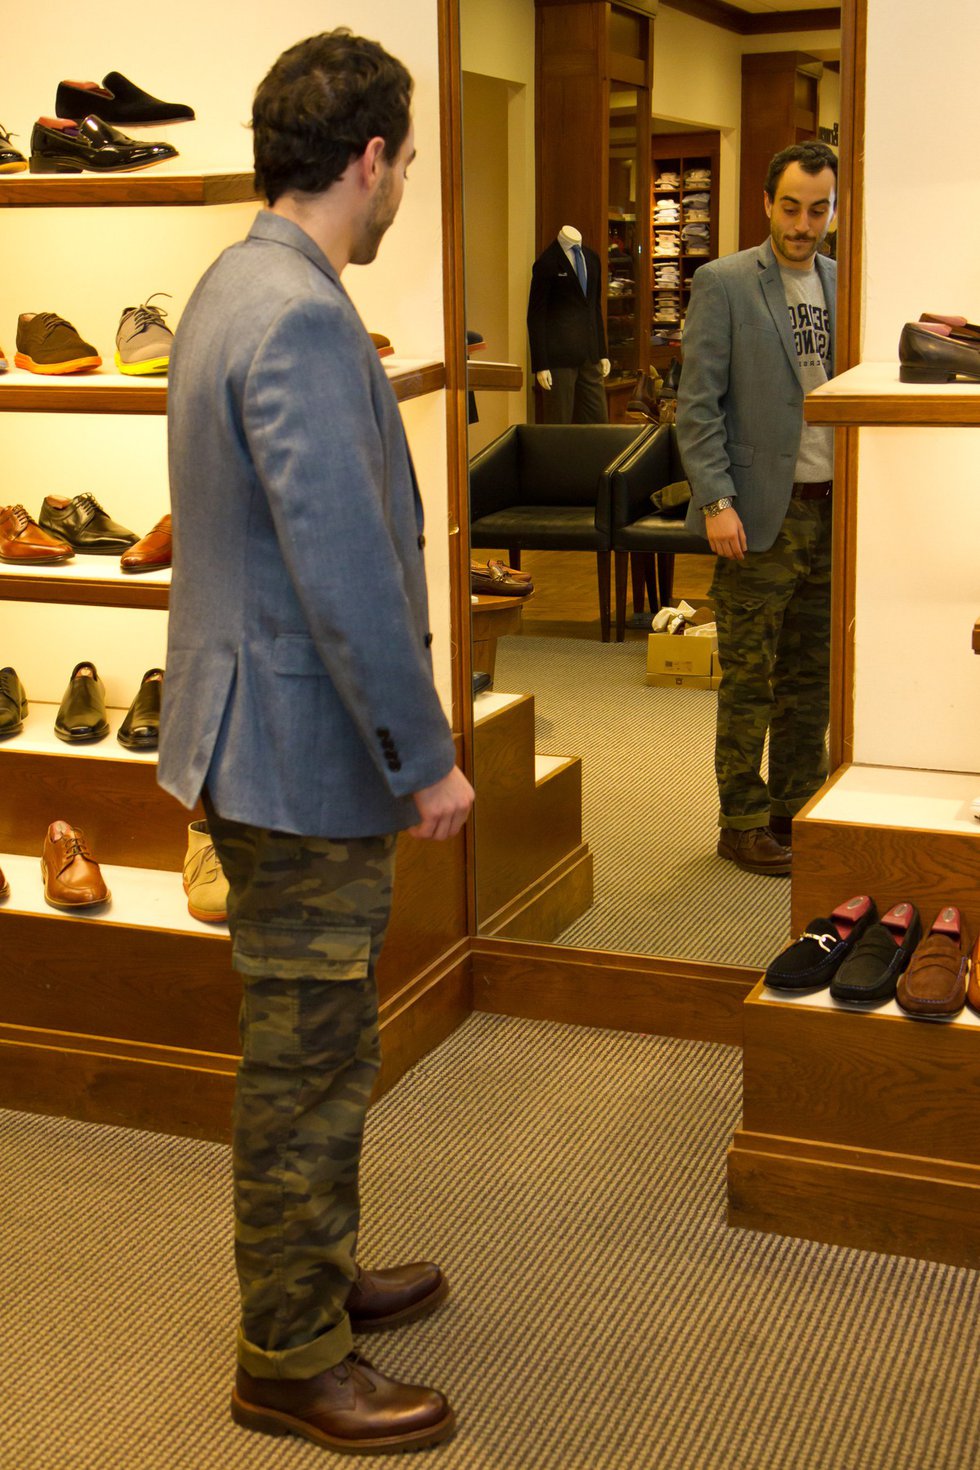 A stylish shopper checks out the Trask shoe.